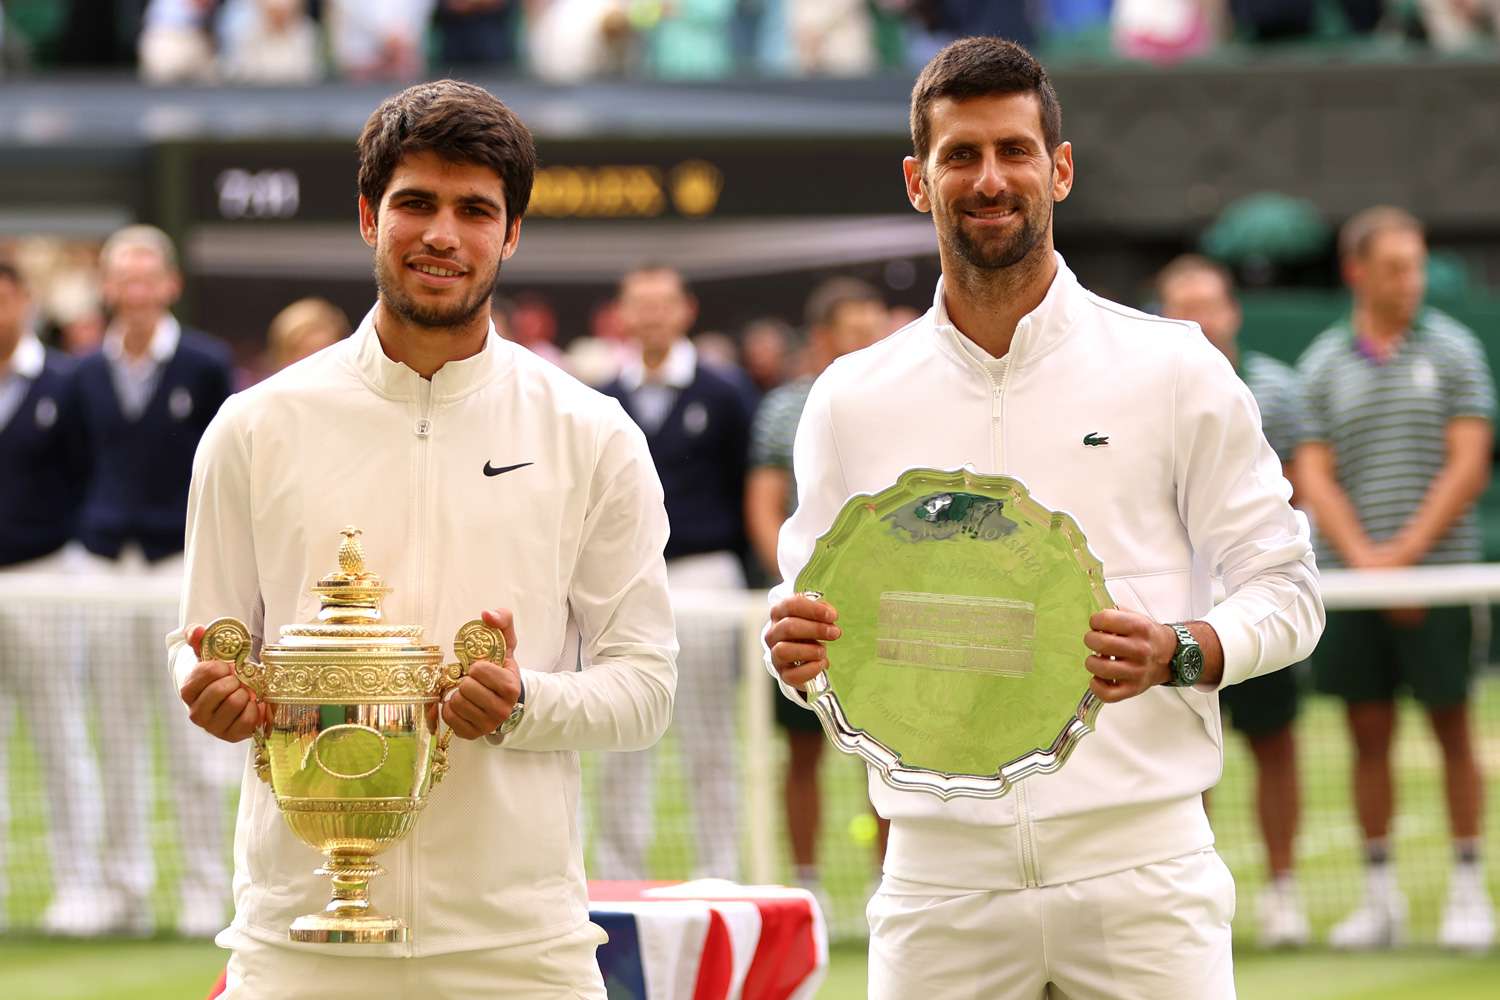 Wimbledon: Alcaraz uma mistura de Djoko, Nadal e Federer? “Ele tem o melhor dos três mundos”, diz Djokovic